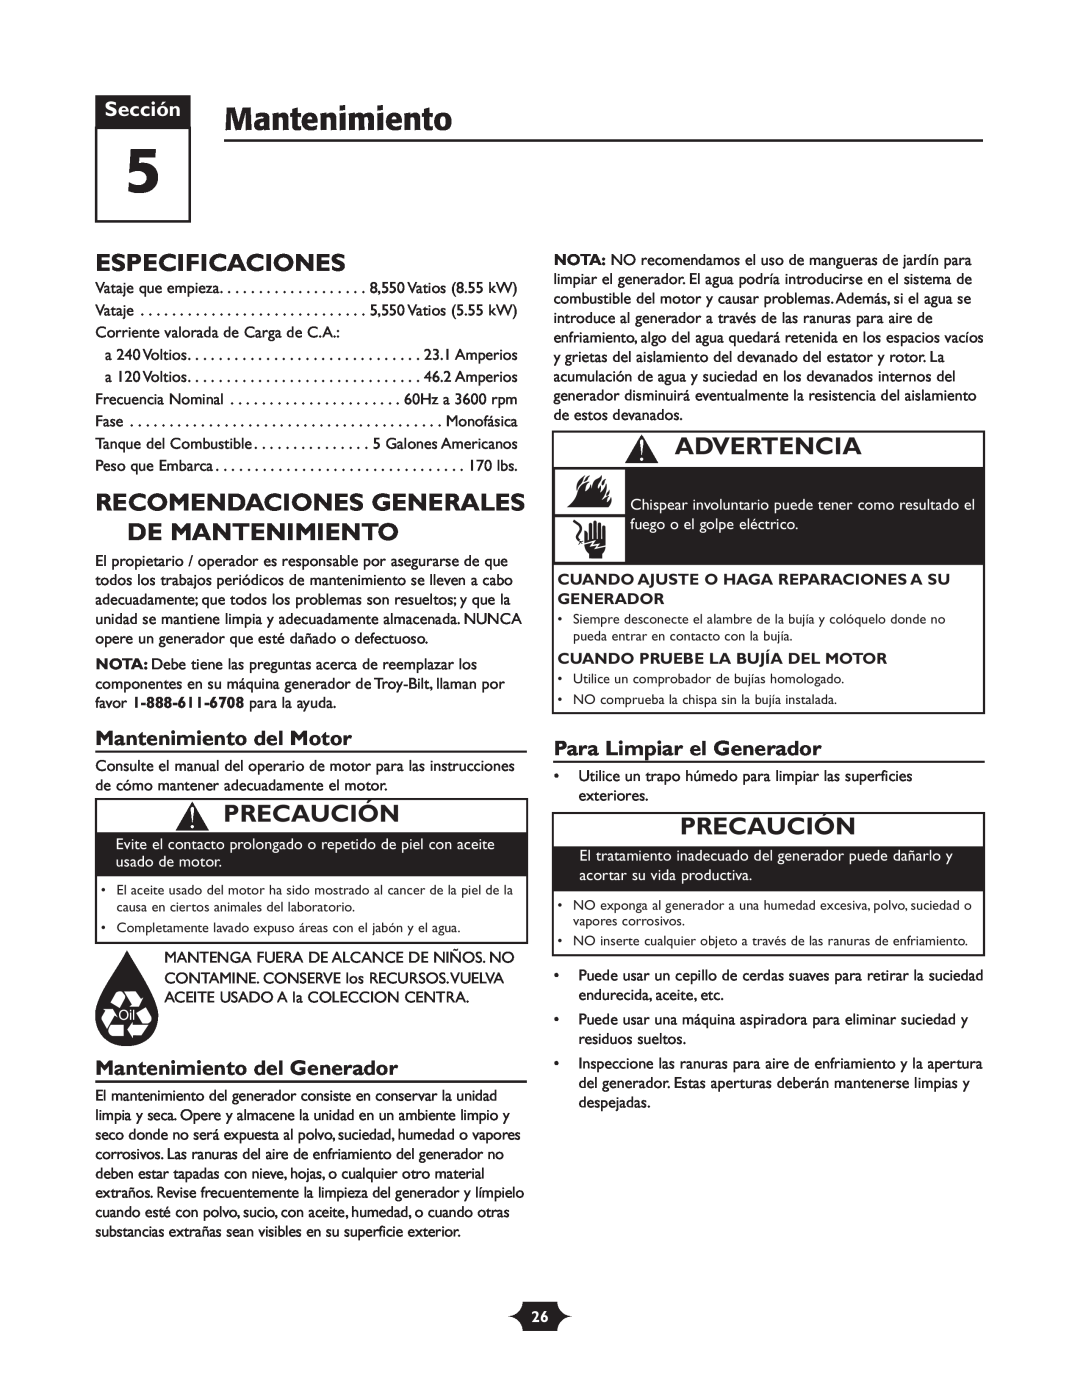 Troy-Bilt 030245 Especificaciones, Recomendaciones Generales De Mantenimiento, Mantenimiento del Motor, Advertencia 